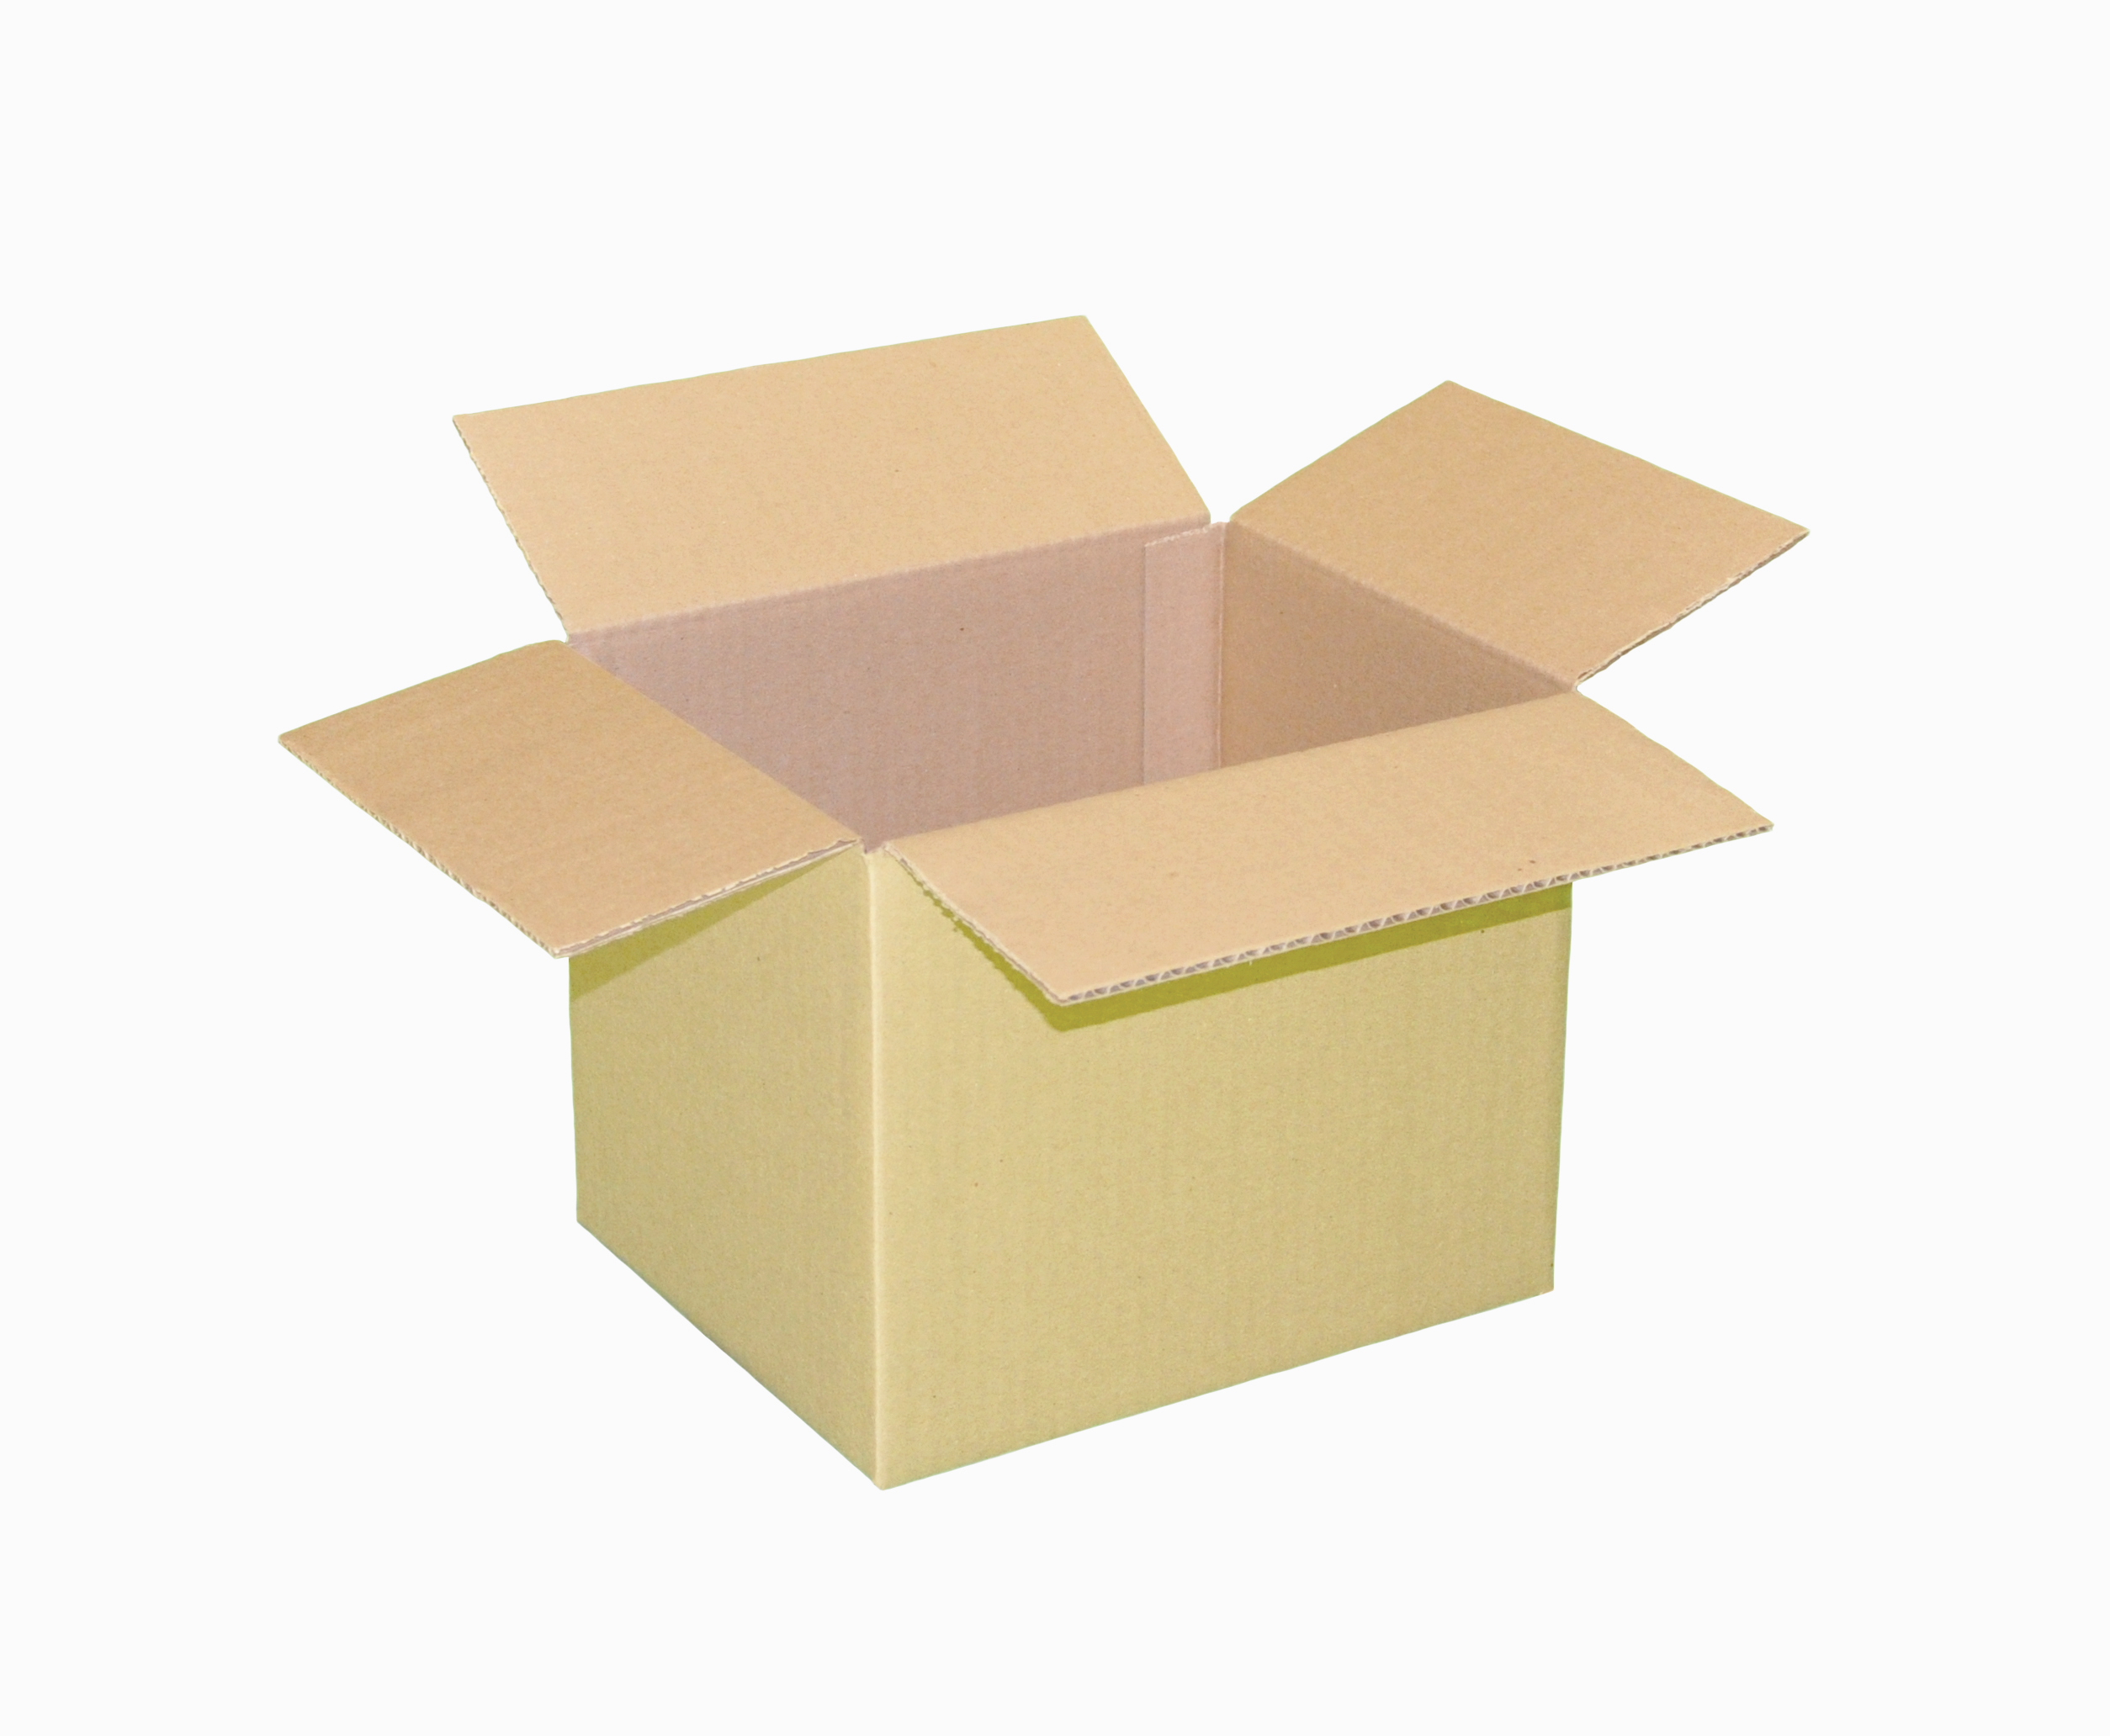 Box,12x10x12,25/bndl,32ECT,RSC
500/bale